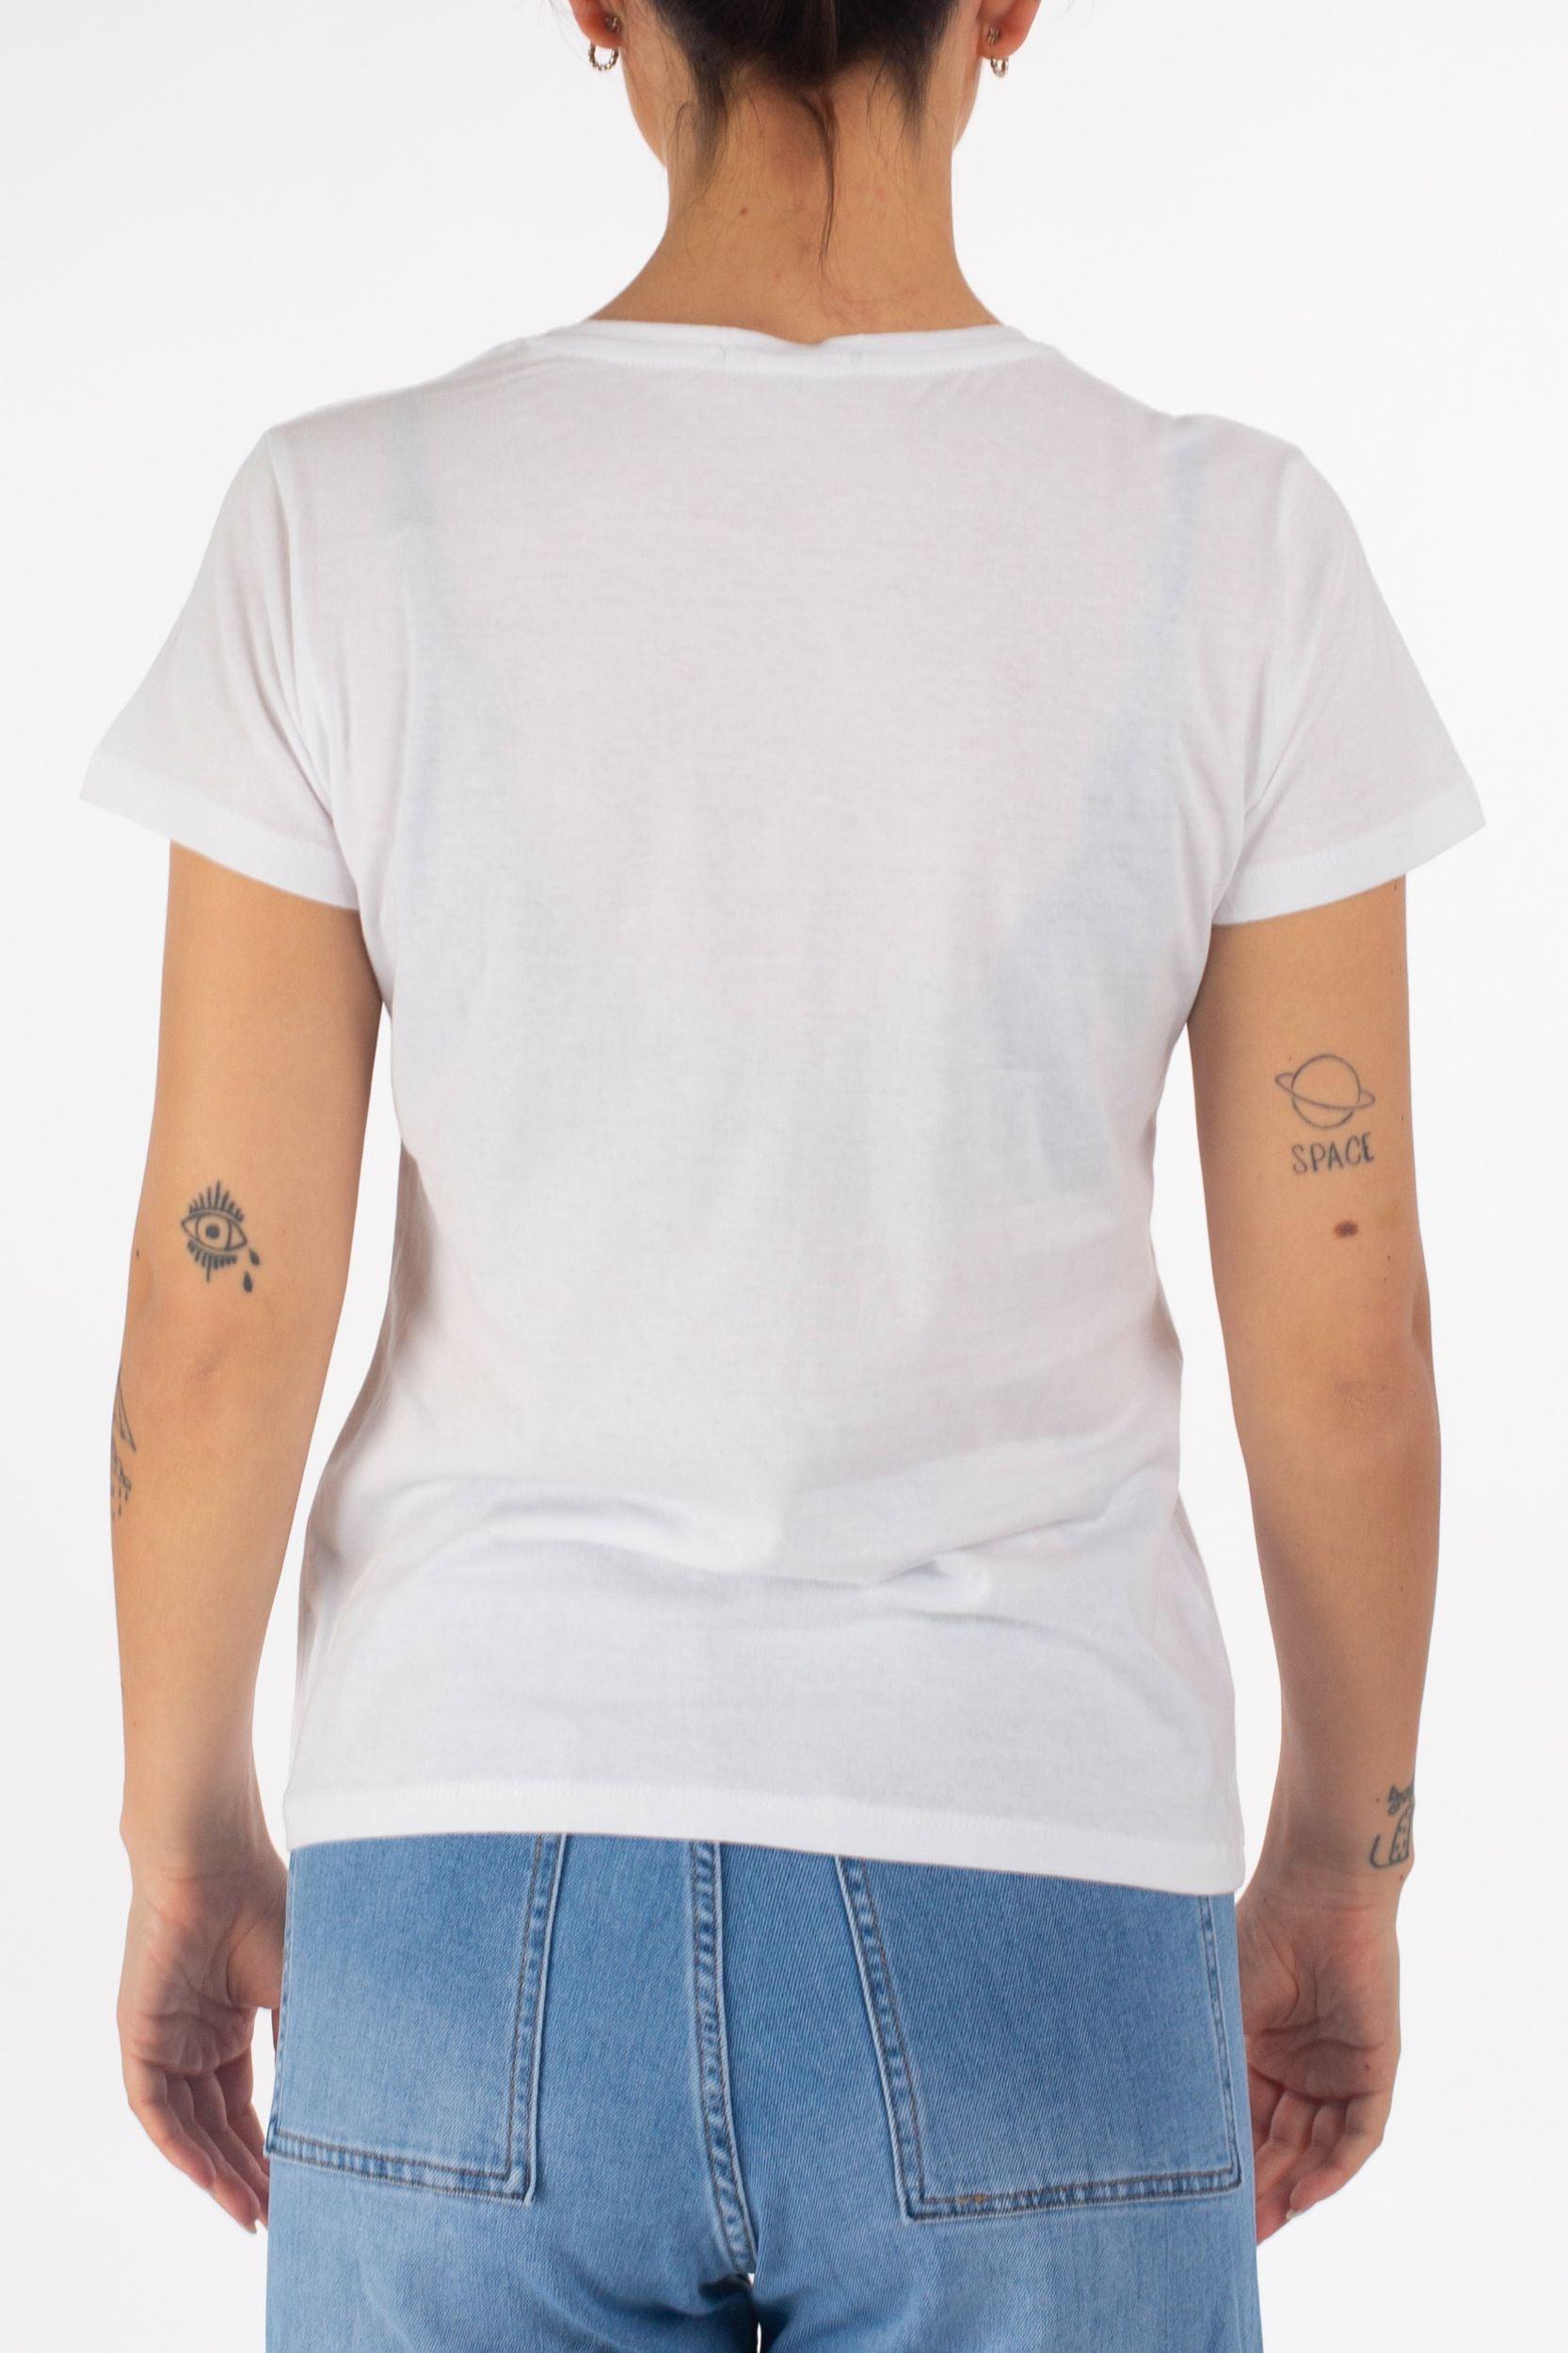 T-Shirt "La Strada" - La Strada